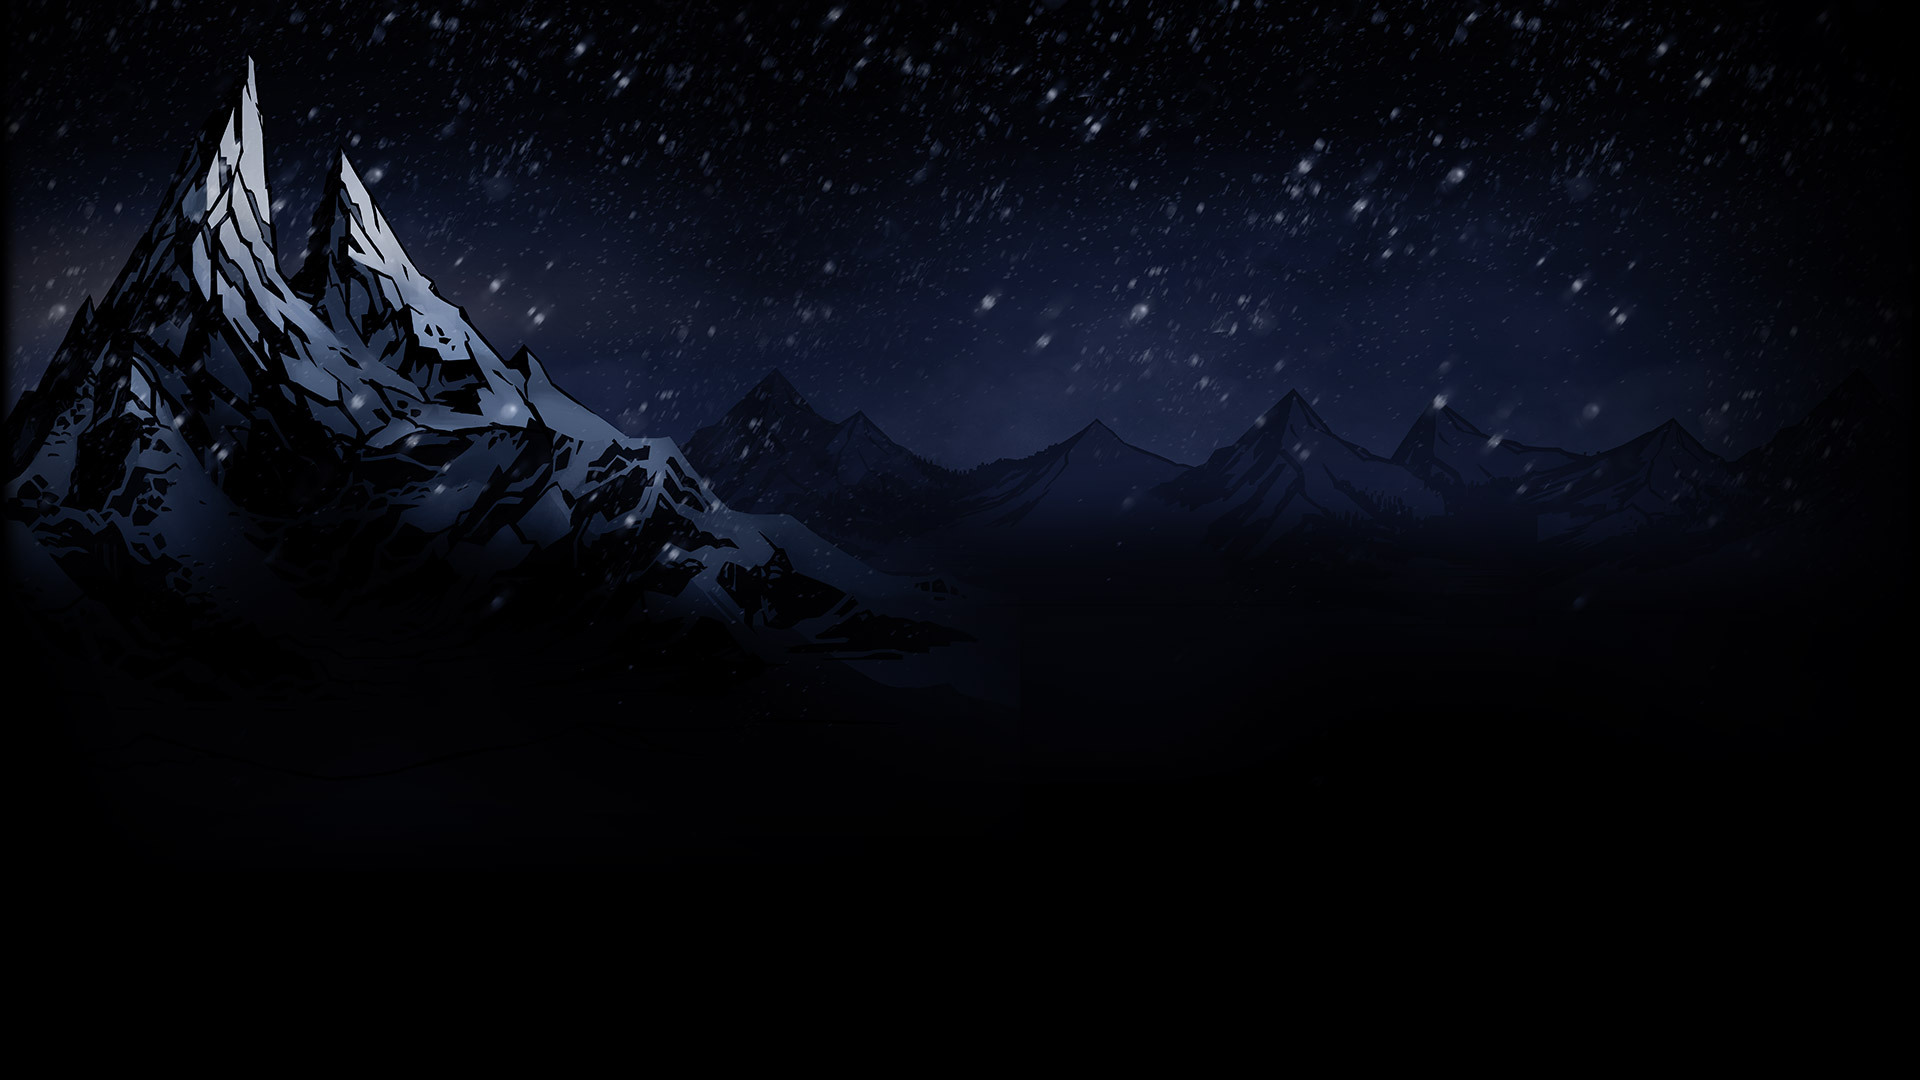 General 1920x1080 snow mountains digital art dark sky depth of field Darkest Dungeon video games night